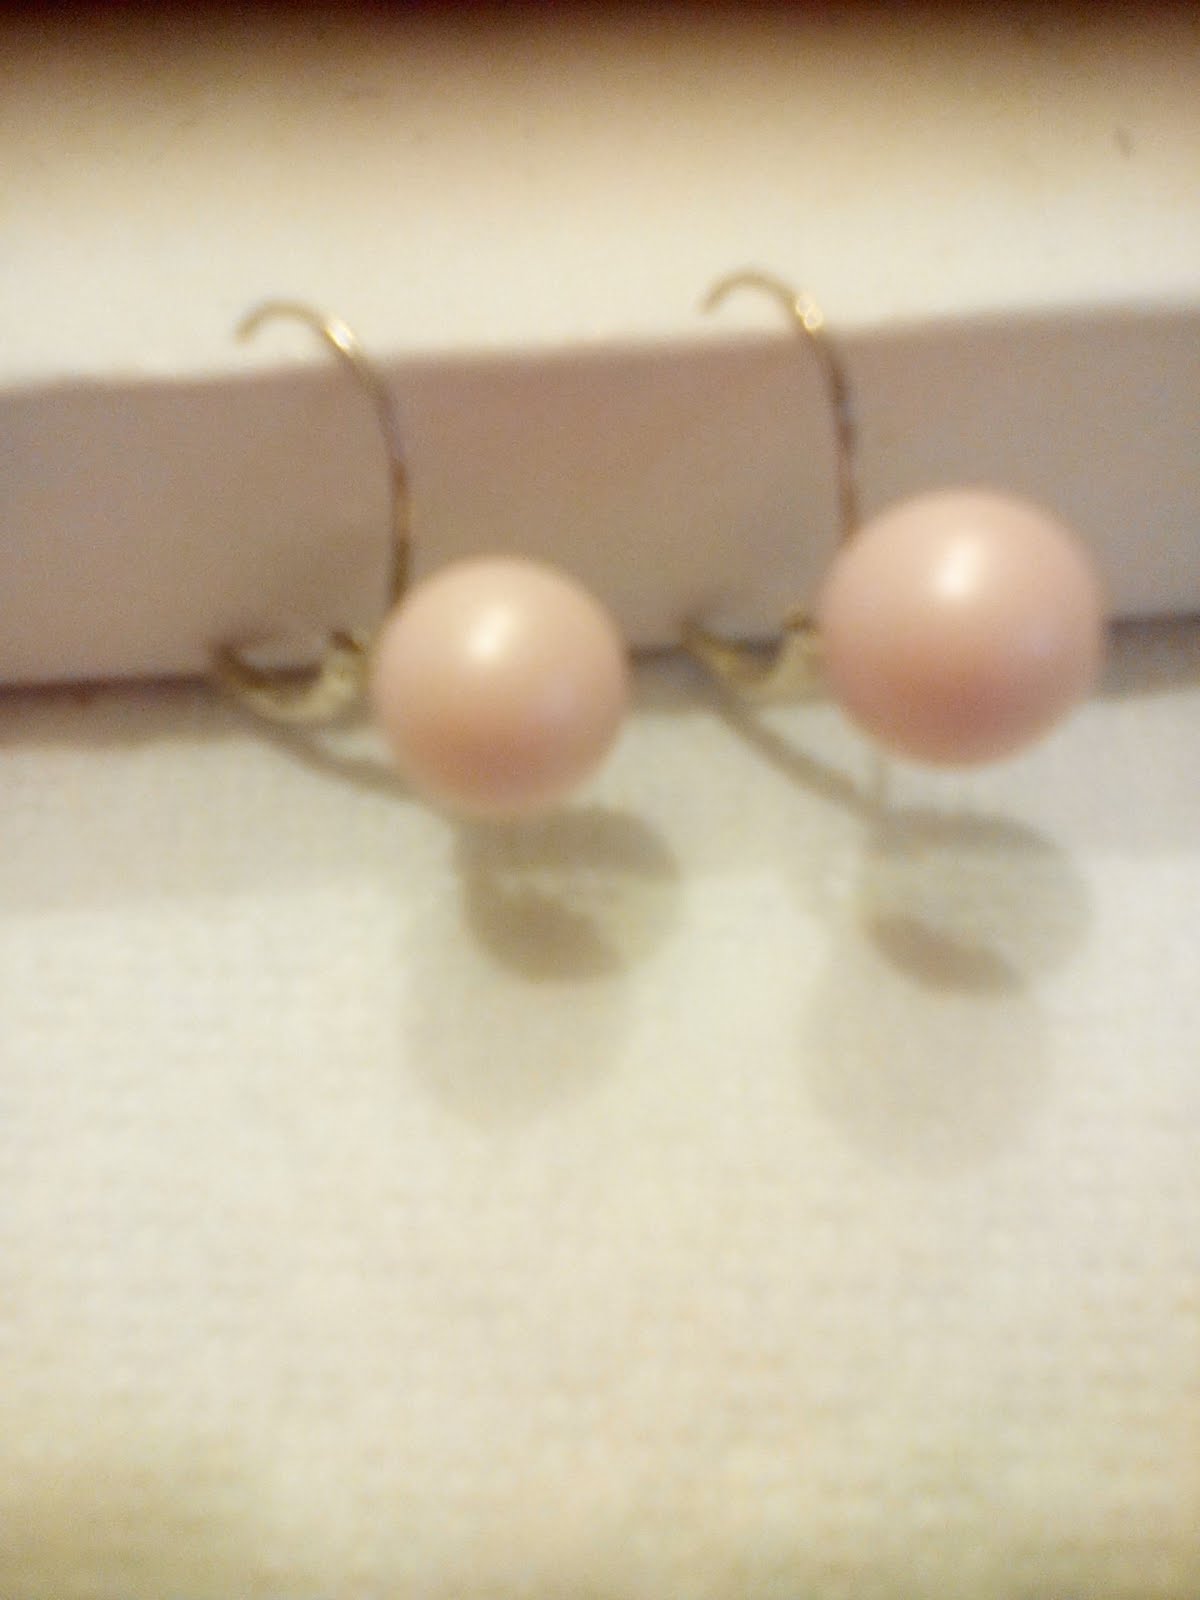 Orecchini con perle